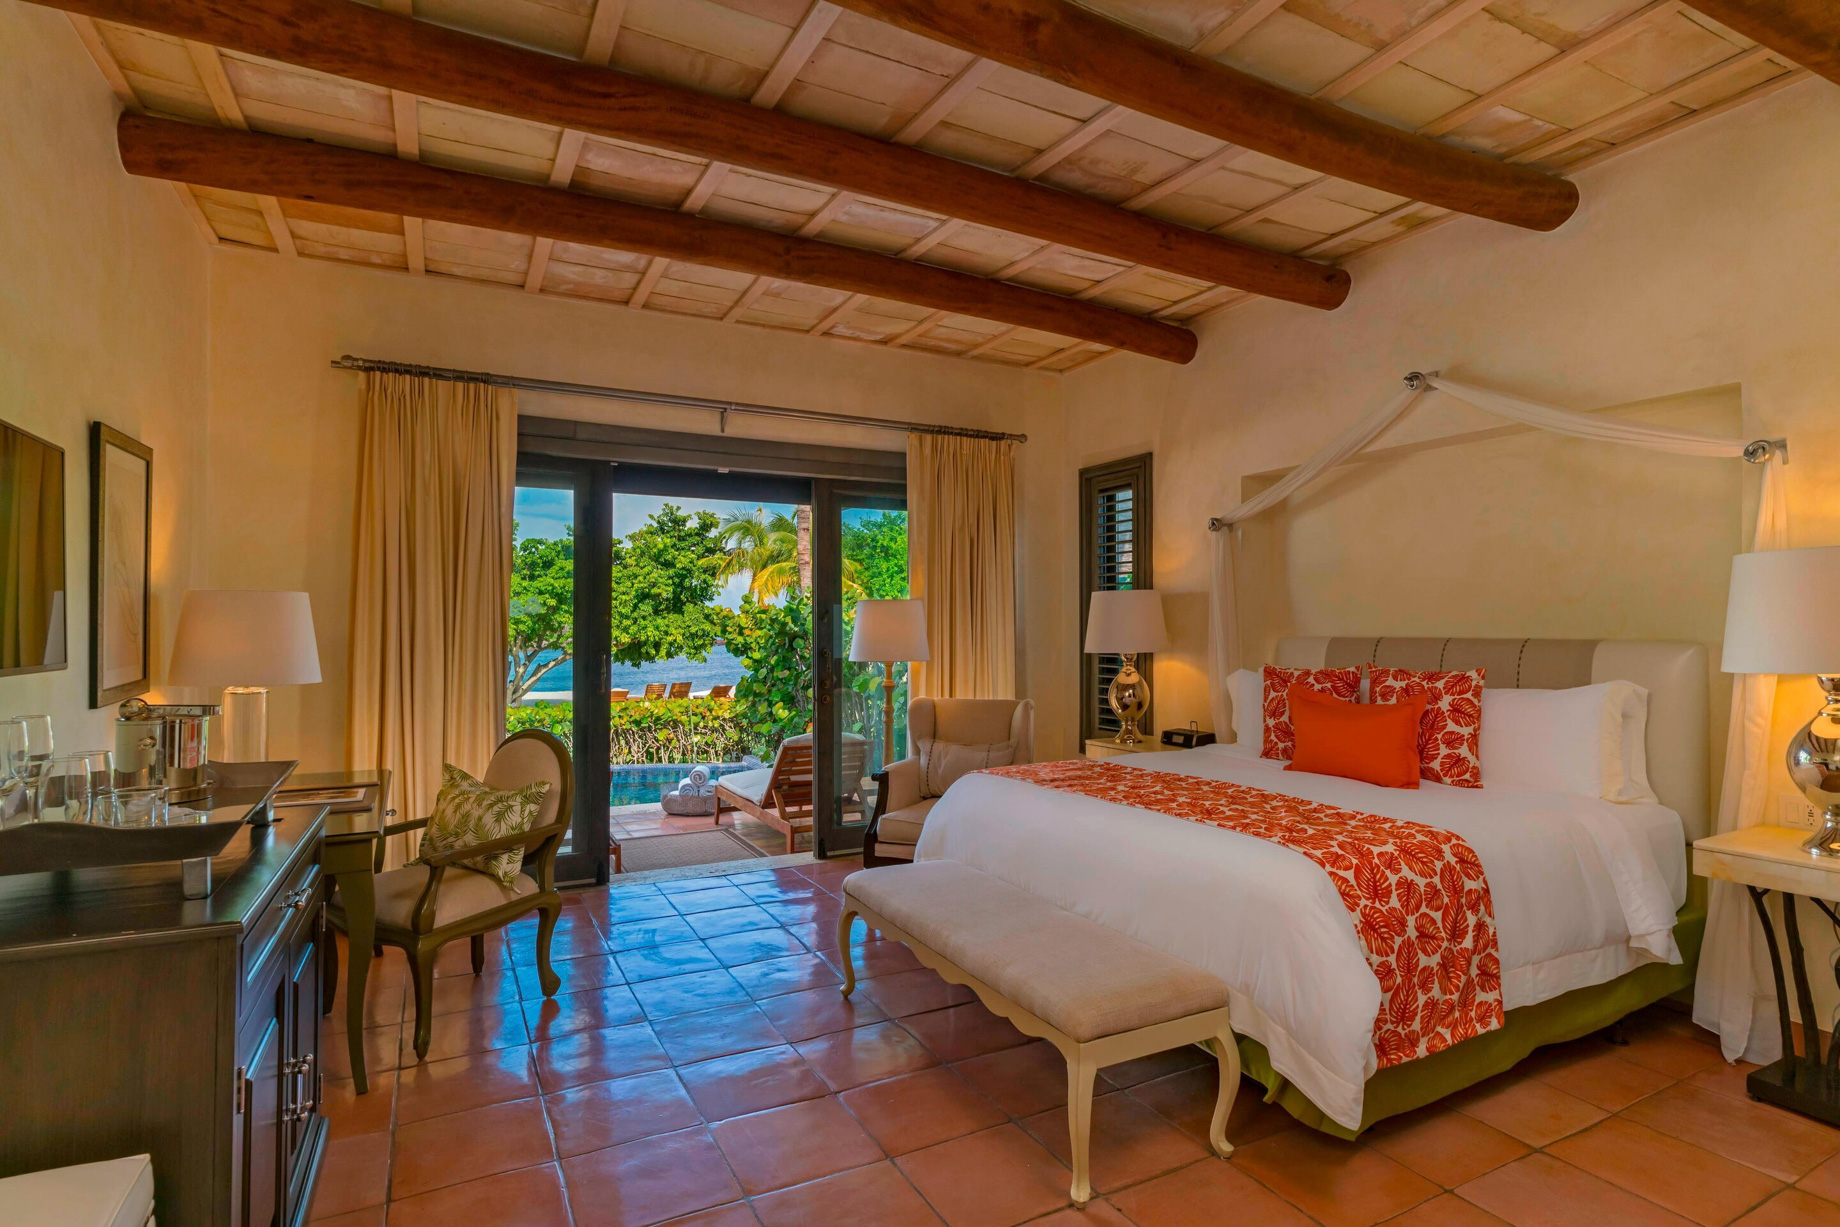 The St. Regis Punta Mita Resort – Nayarit, Mexico – 1 Bedroom Villa Ocean View